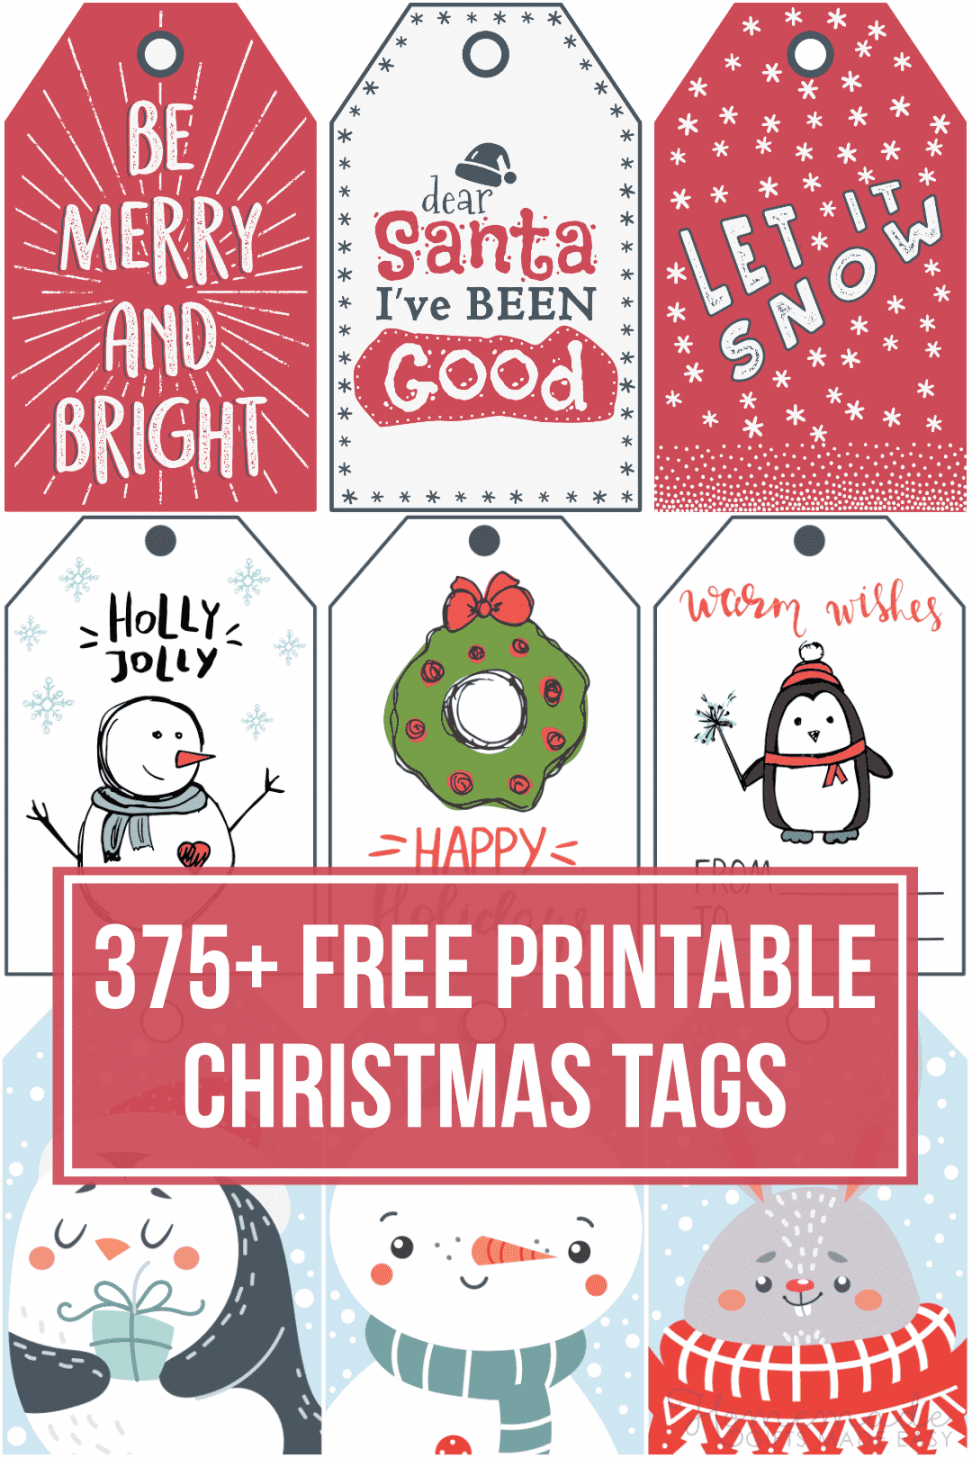 Free Printable Christmas Tags - Printable - + Free Printable Christmas Tags for your Holiday Gifts